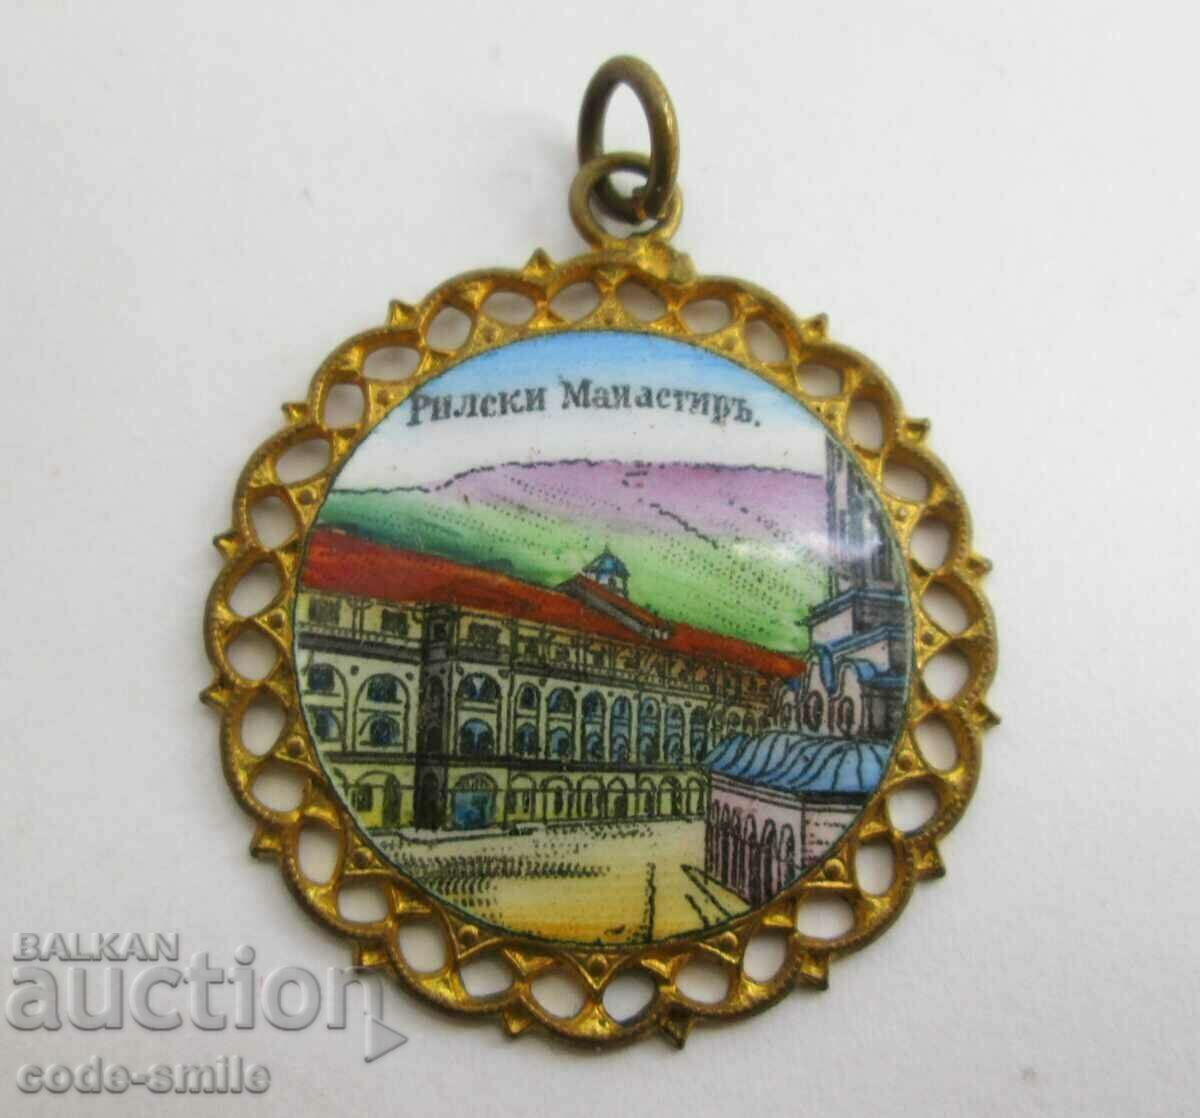 Regatul Bulgariei medalion vechi smalț pandantiv Mănăstirea Rila